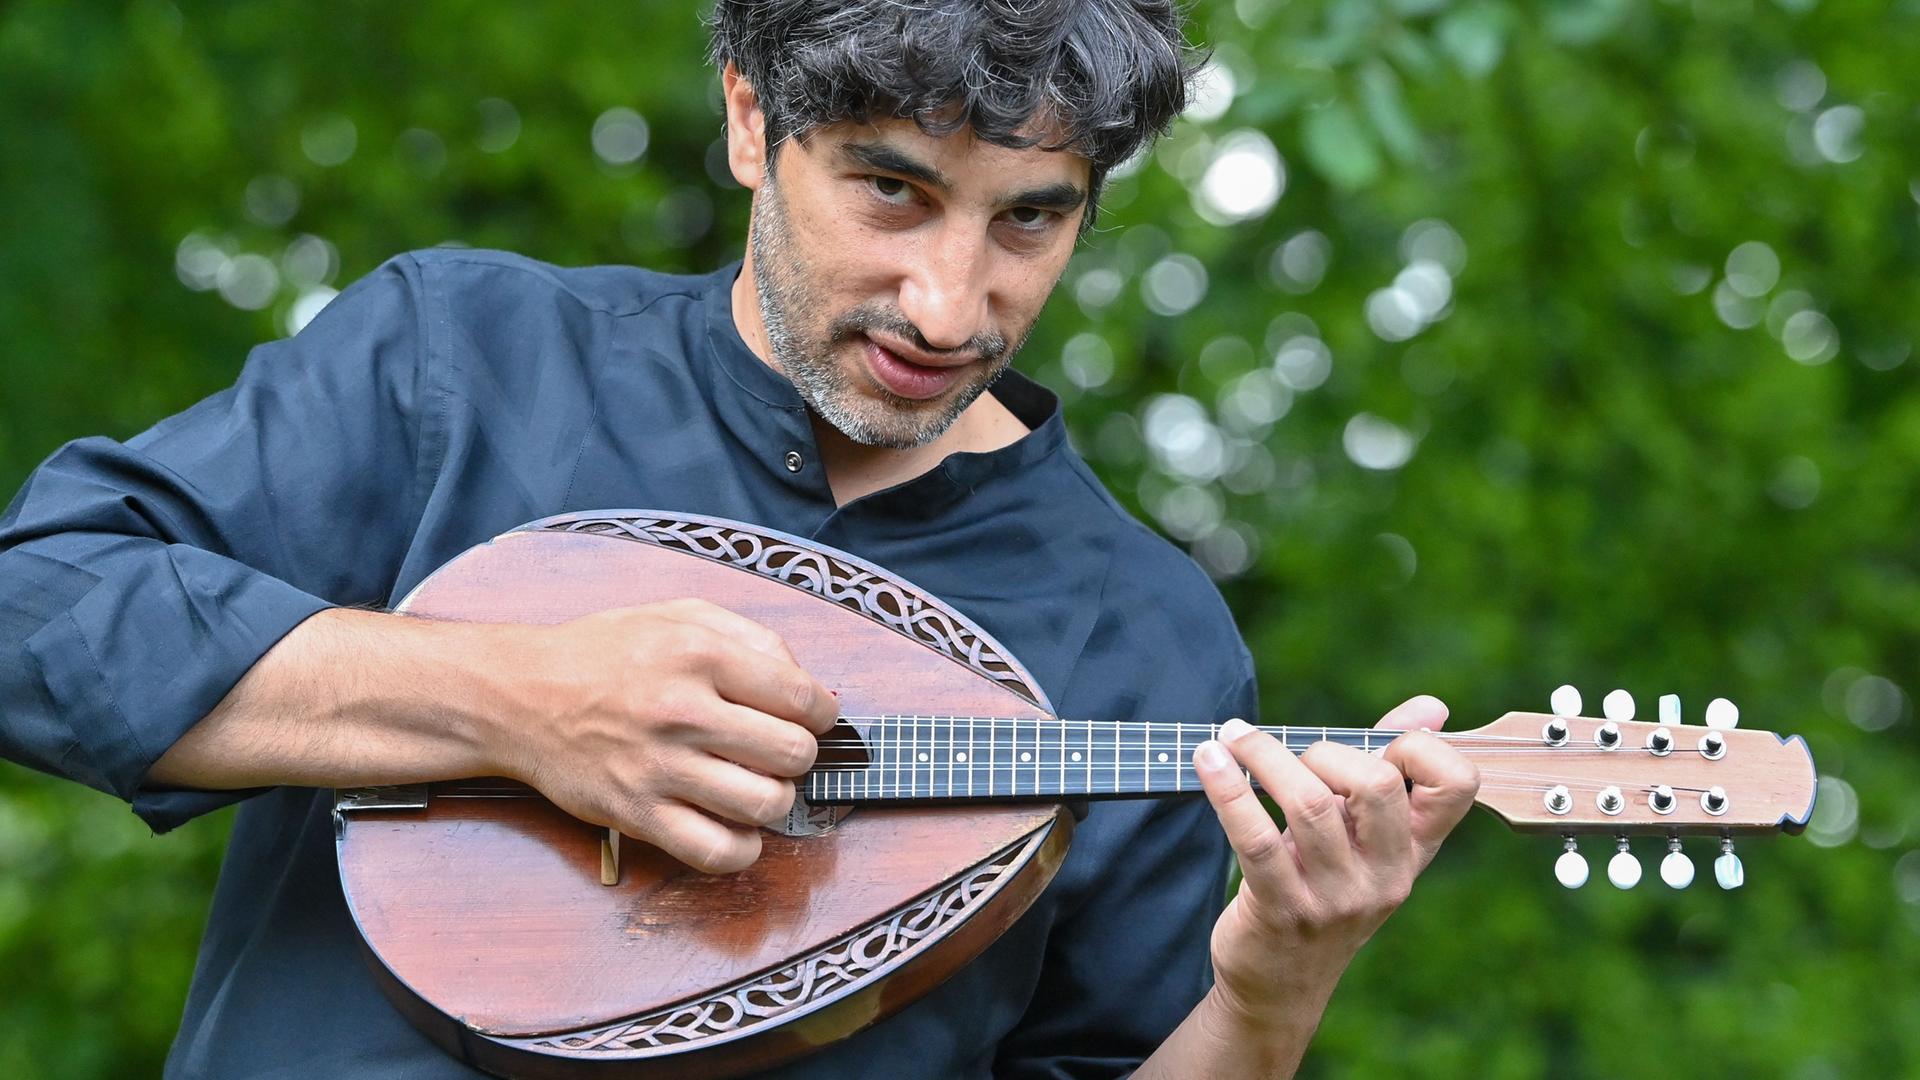 Avi Avital steht mit einer Mandoline im Freien vor Grünpflanzen. Er hat lockige, dunkle Haare, trägt ein dunkelfarbiges Hemd und hält eine Mandoline vor der Brust.